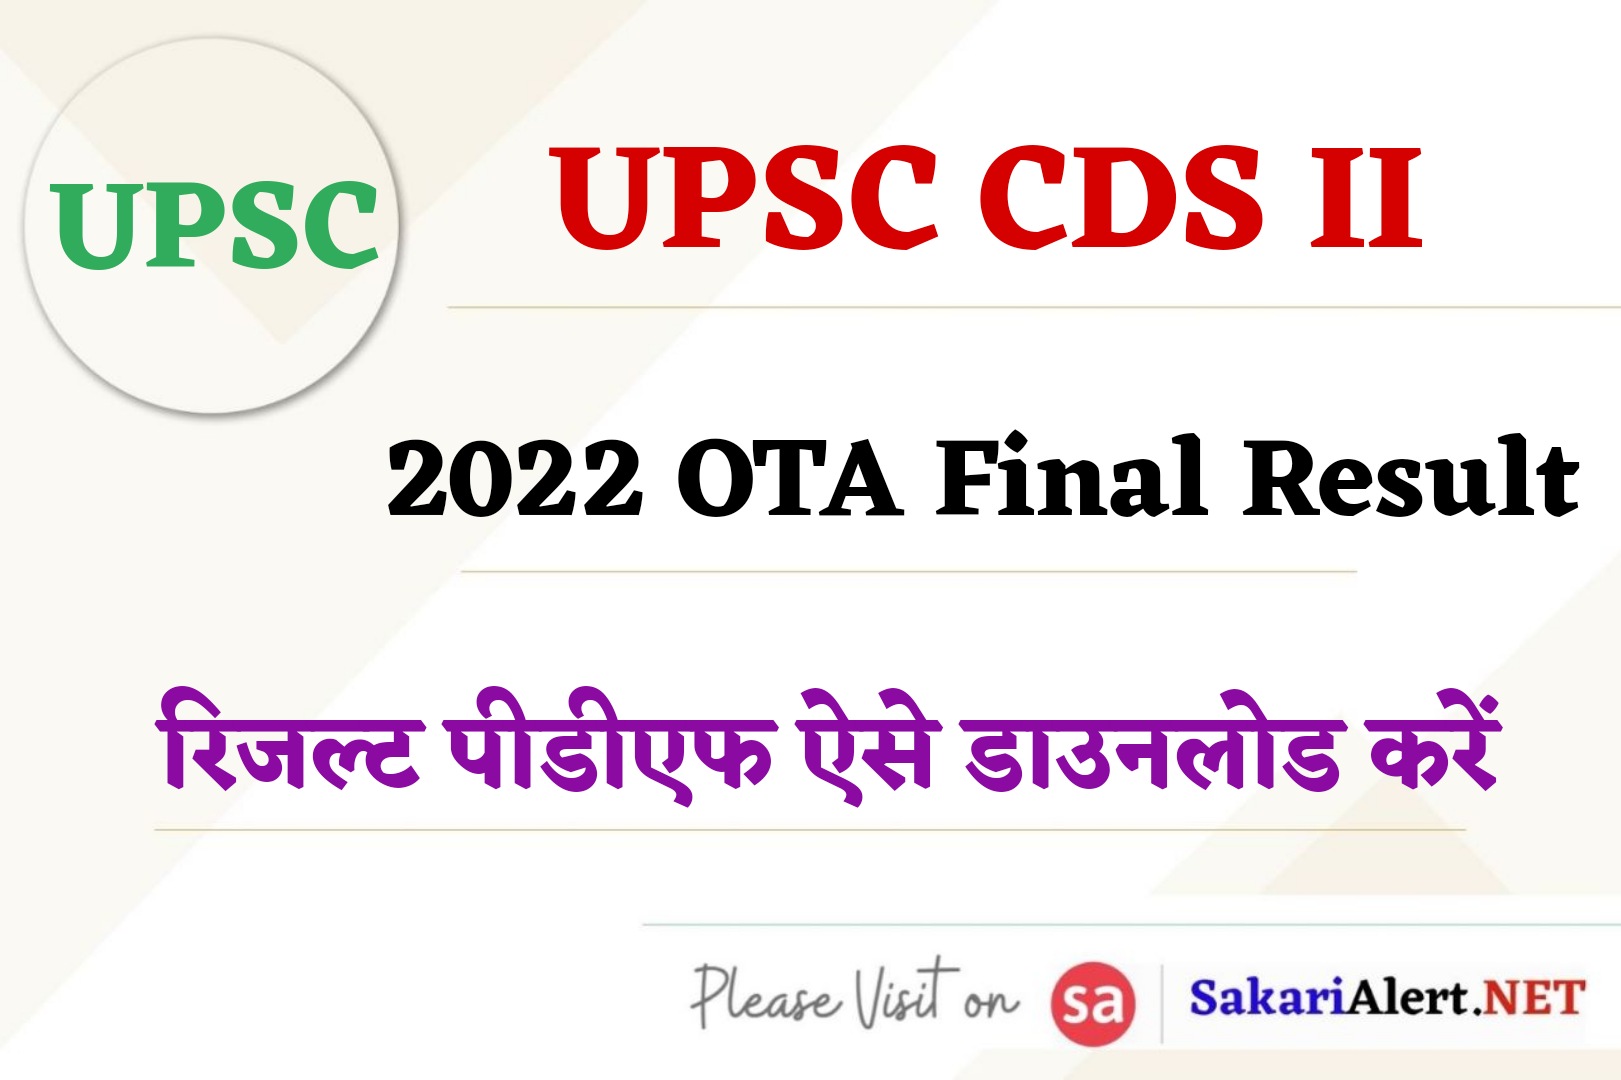 UPSC CDS II 2022 OTA Final Result